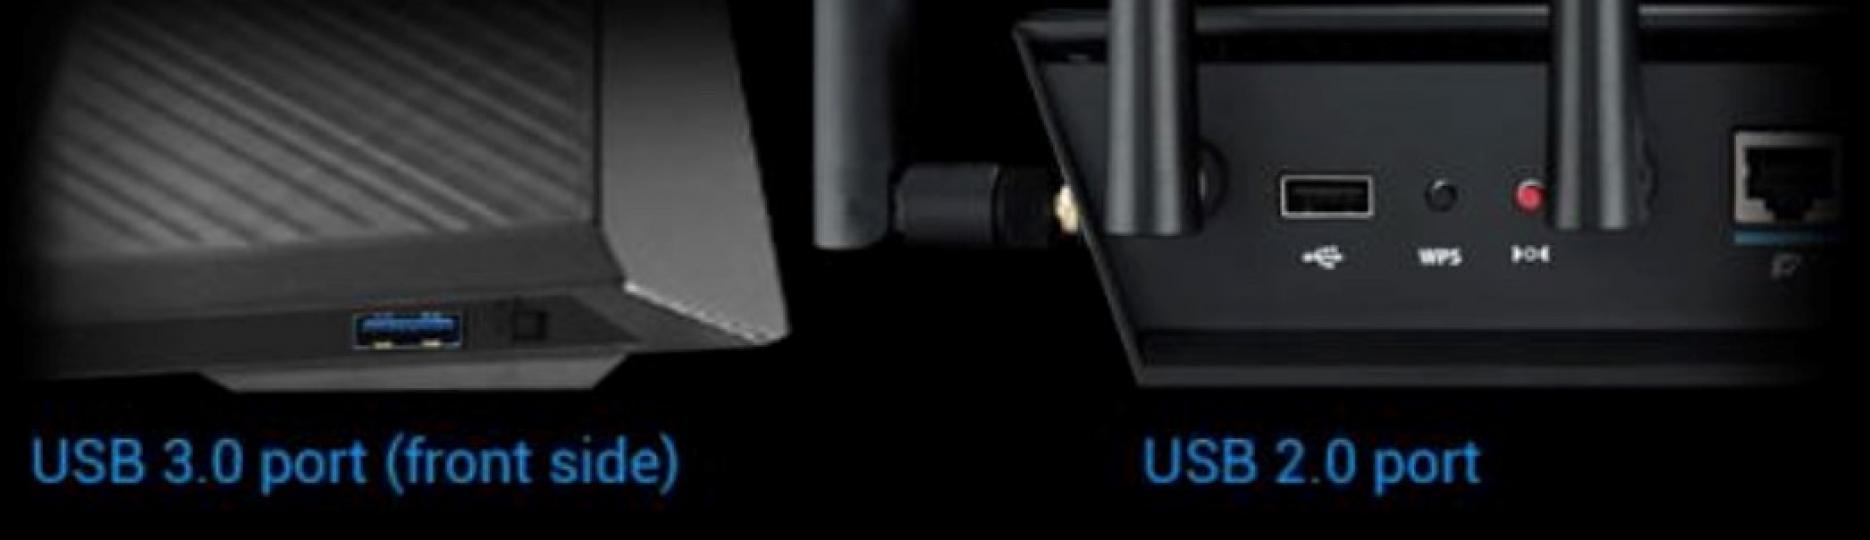 無線路由器對於 USB 2.0 與 USB 3.0 插槽的分別

無線路由器對於 USB 2.0 與 USB 3.0 插槽有不同的使用定位。以無線路由器上 USB 插槽用途來說，不外乎能做到網路共享列...